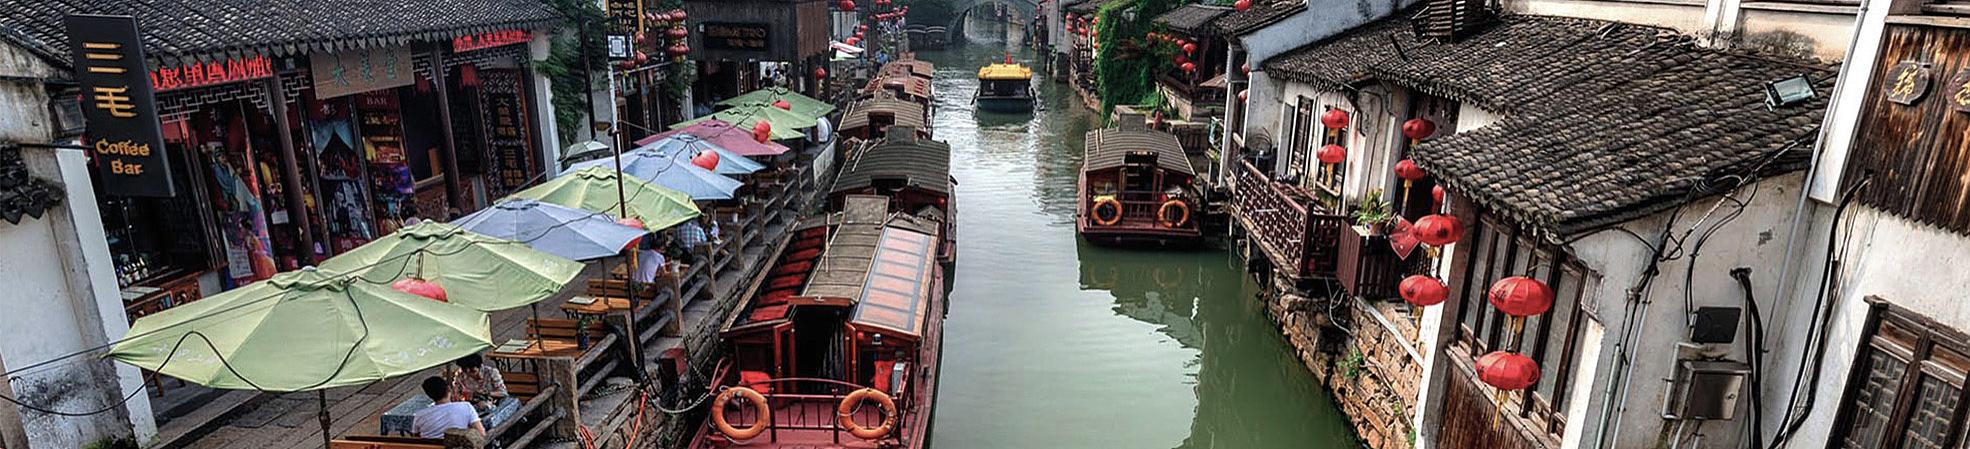 Suzhou Silk Photo Tour